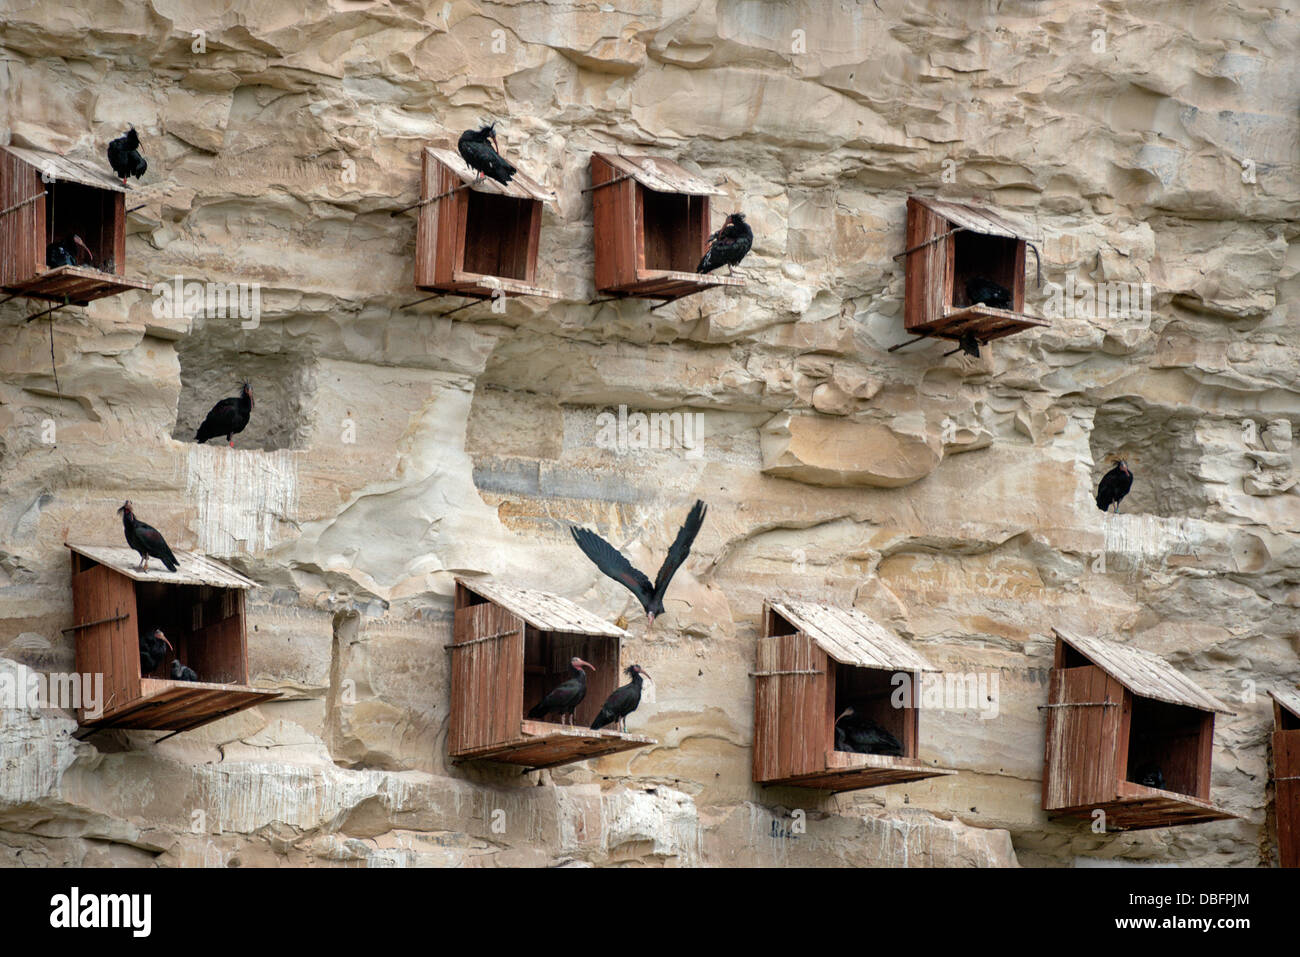 En peligro de extinción ibis calva, Geronticus eremita, la rehabilitación y el centro de cría en cautividad de Gaziantep, Turquía Foto de stock